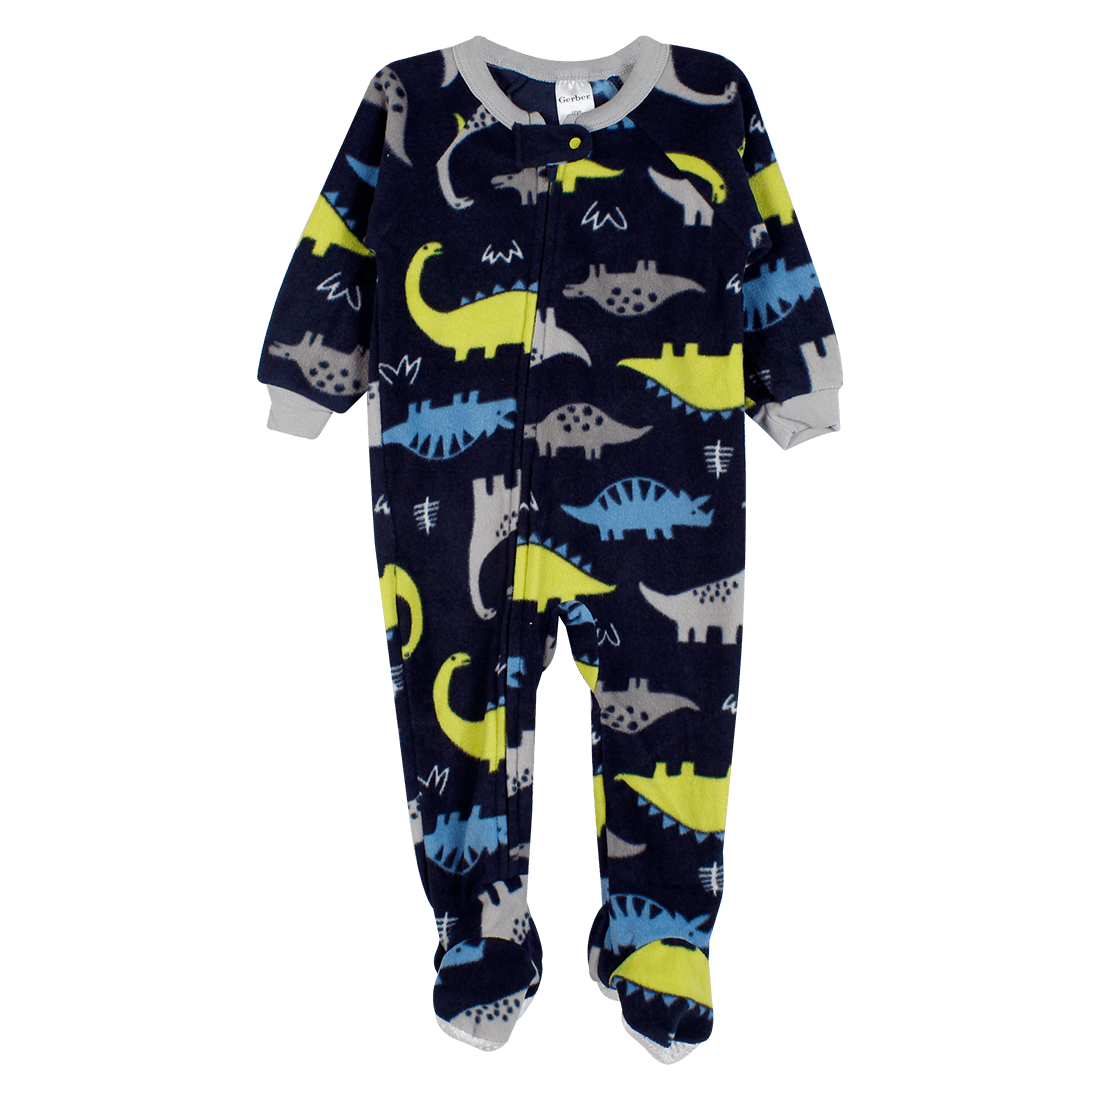 Pijama Enteriza Dinosaurios Niños - Gerber